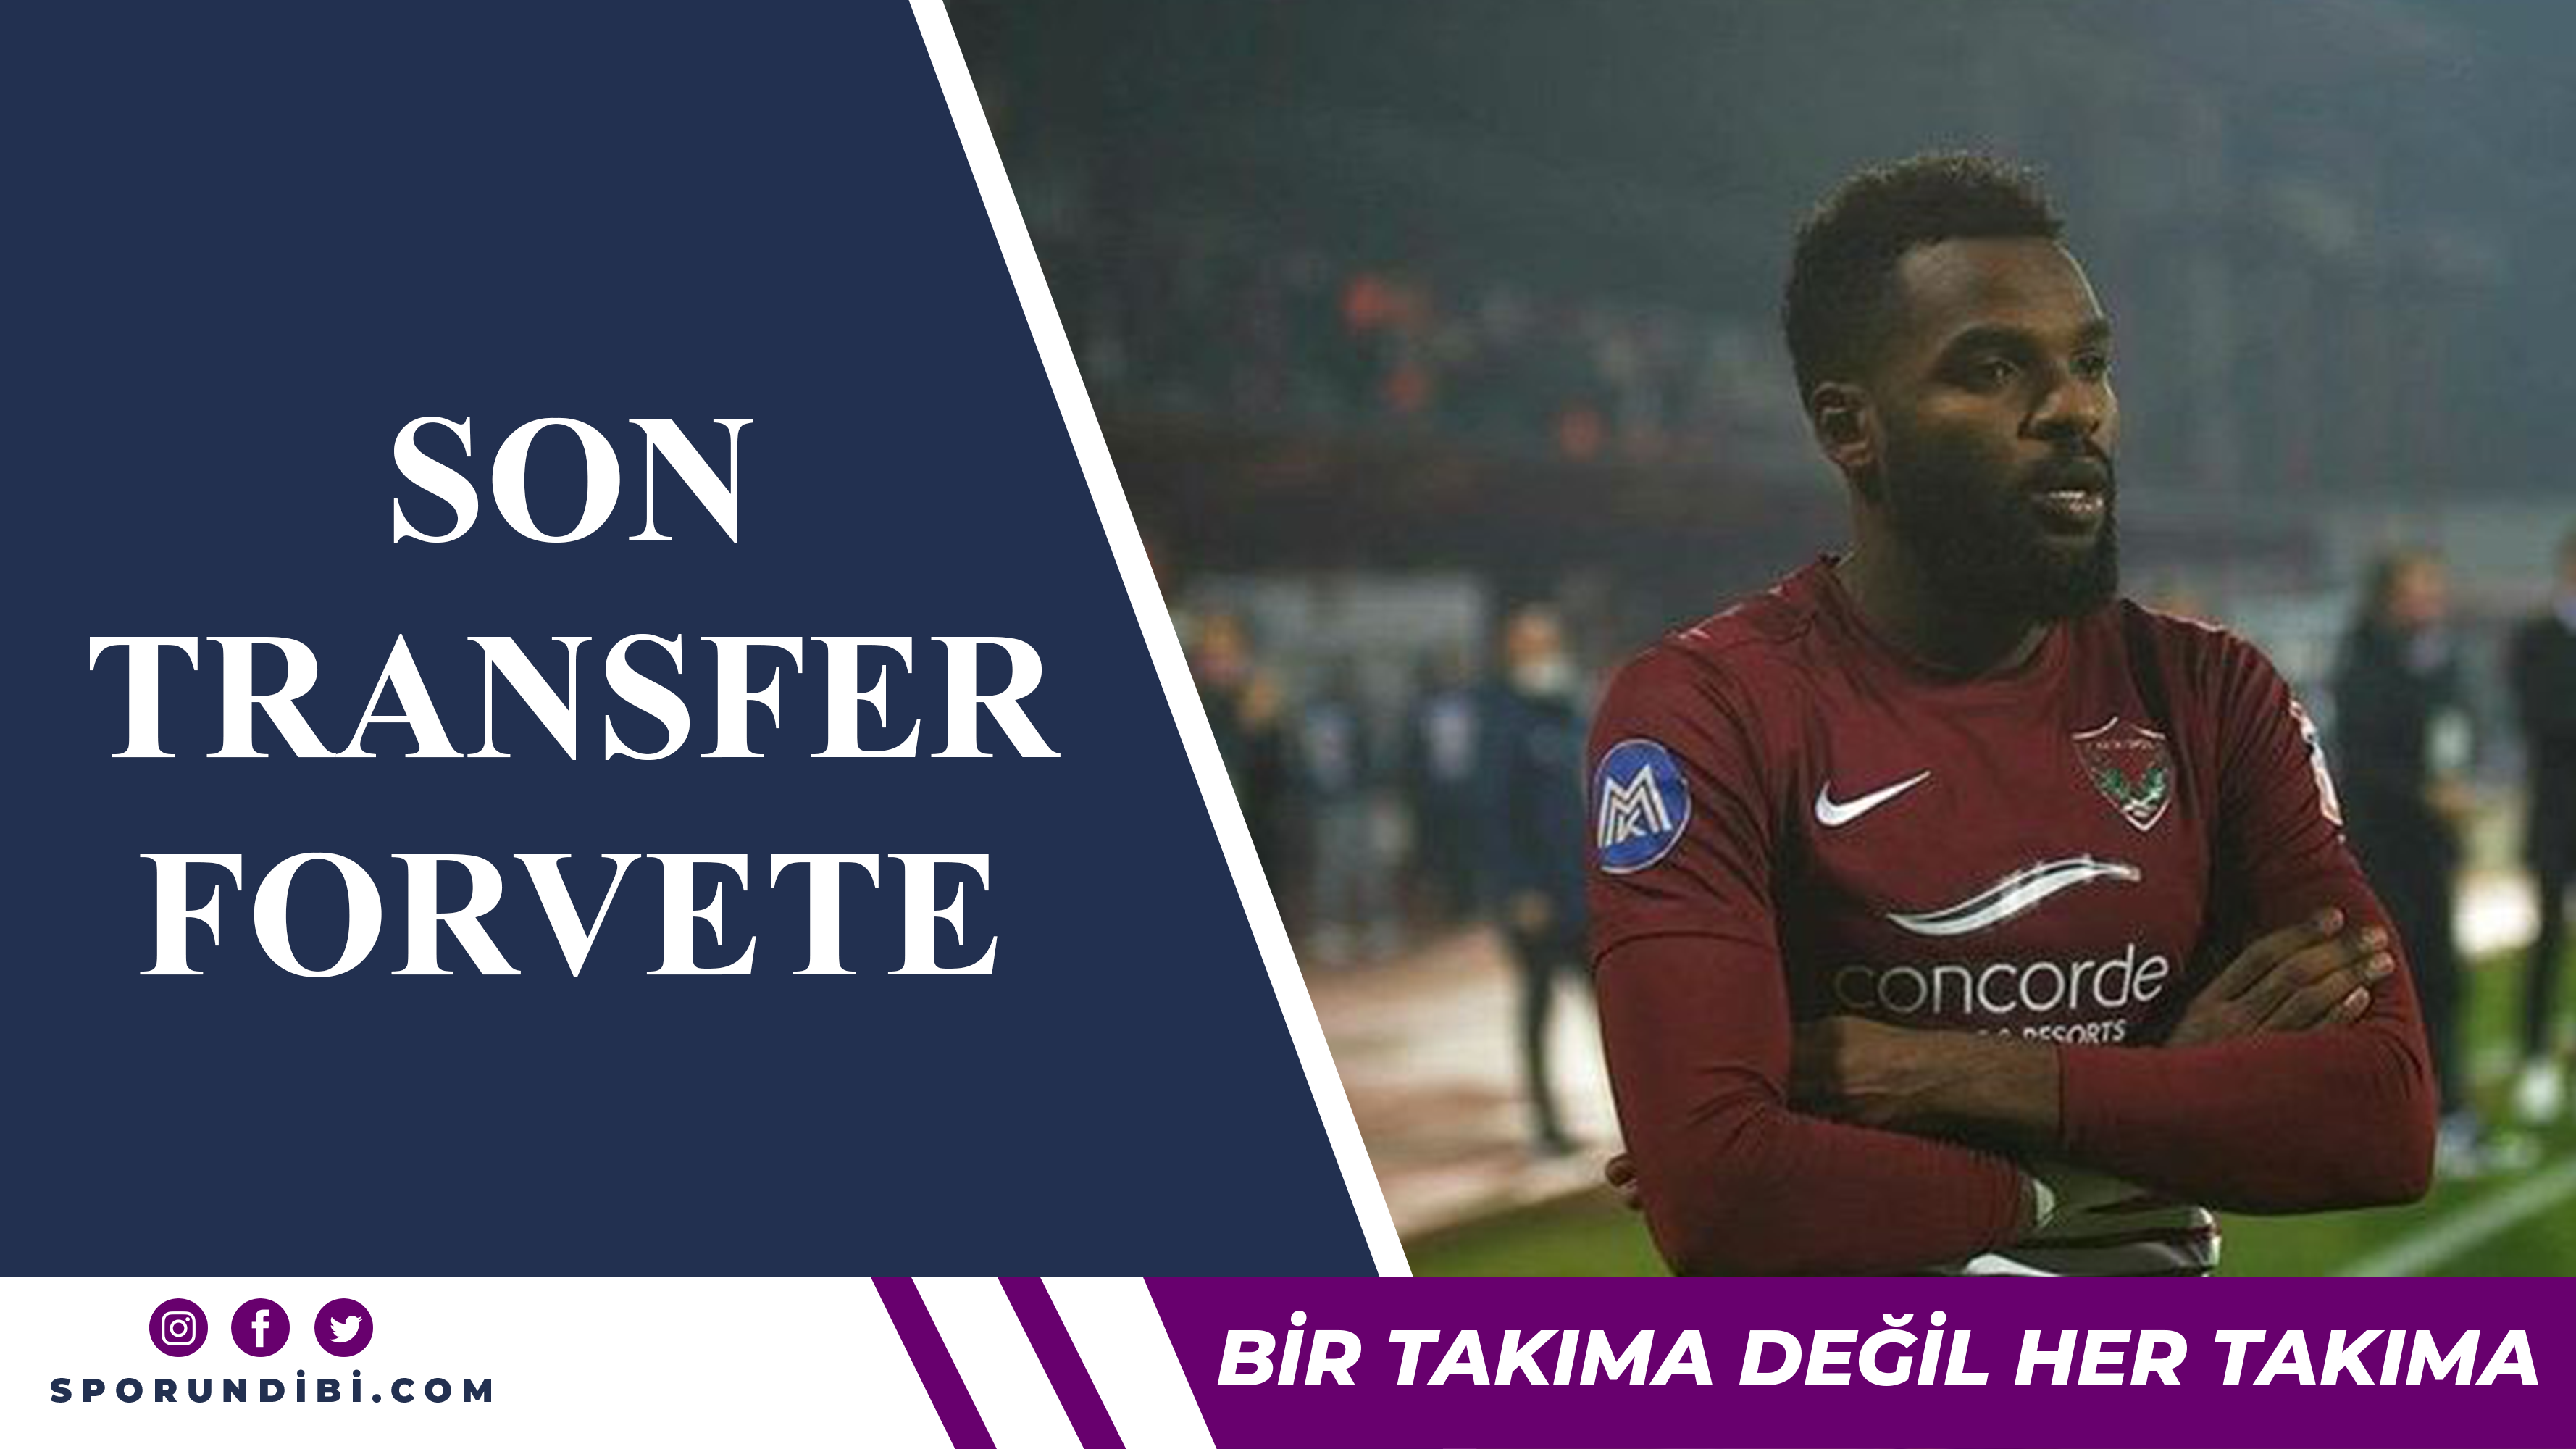 Fenerbahçe'de son transfer forvete